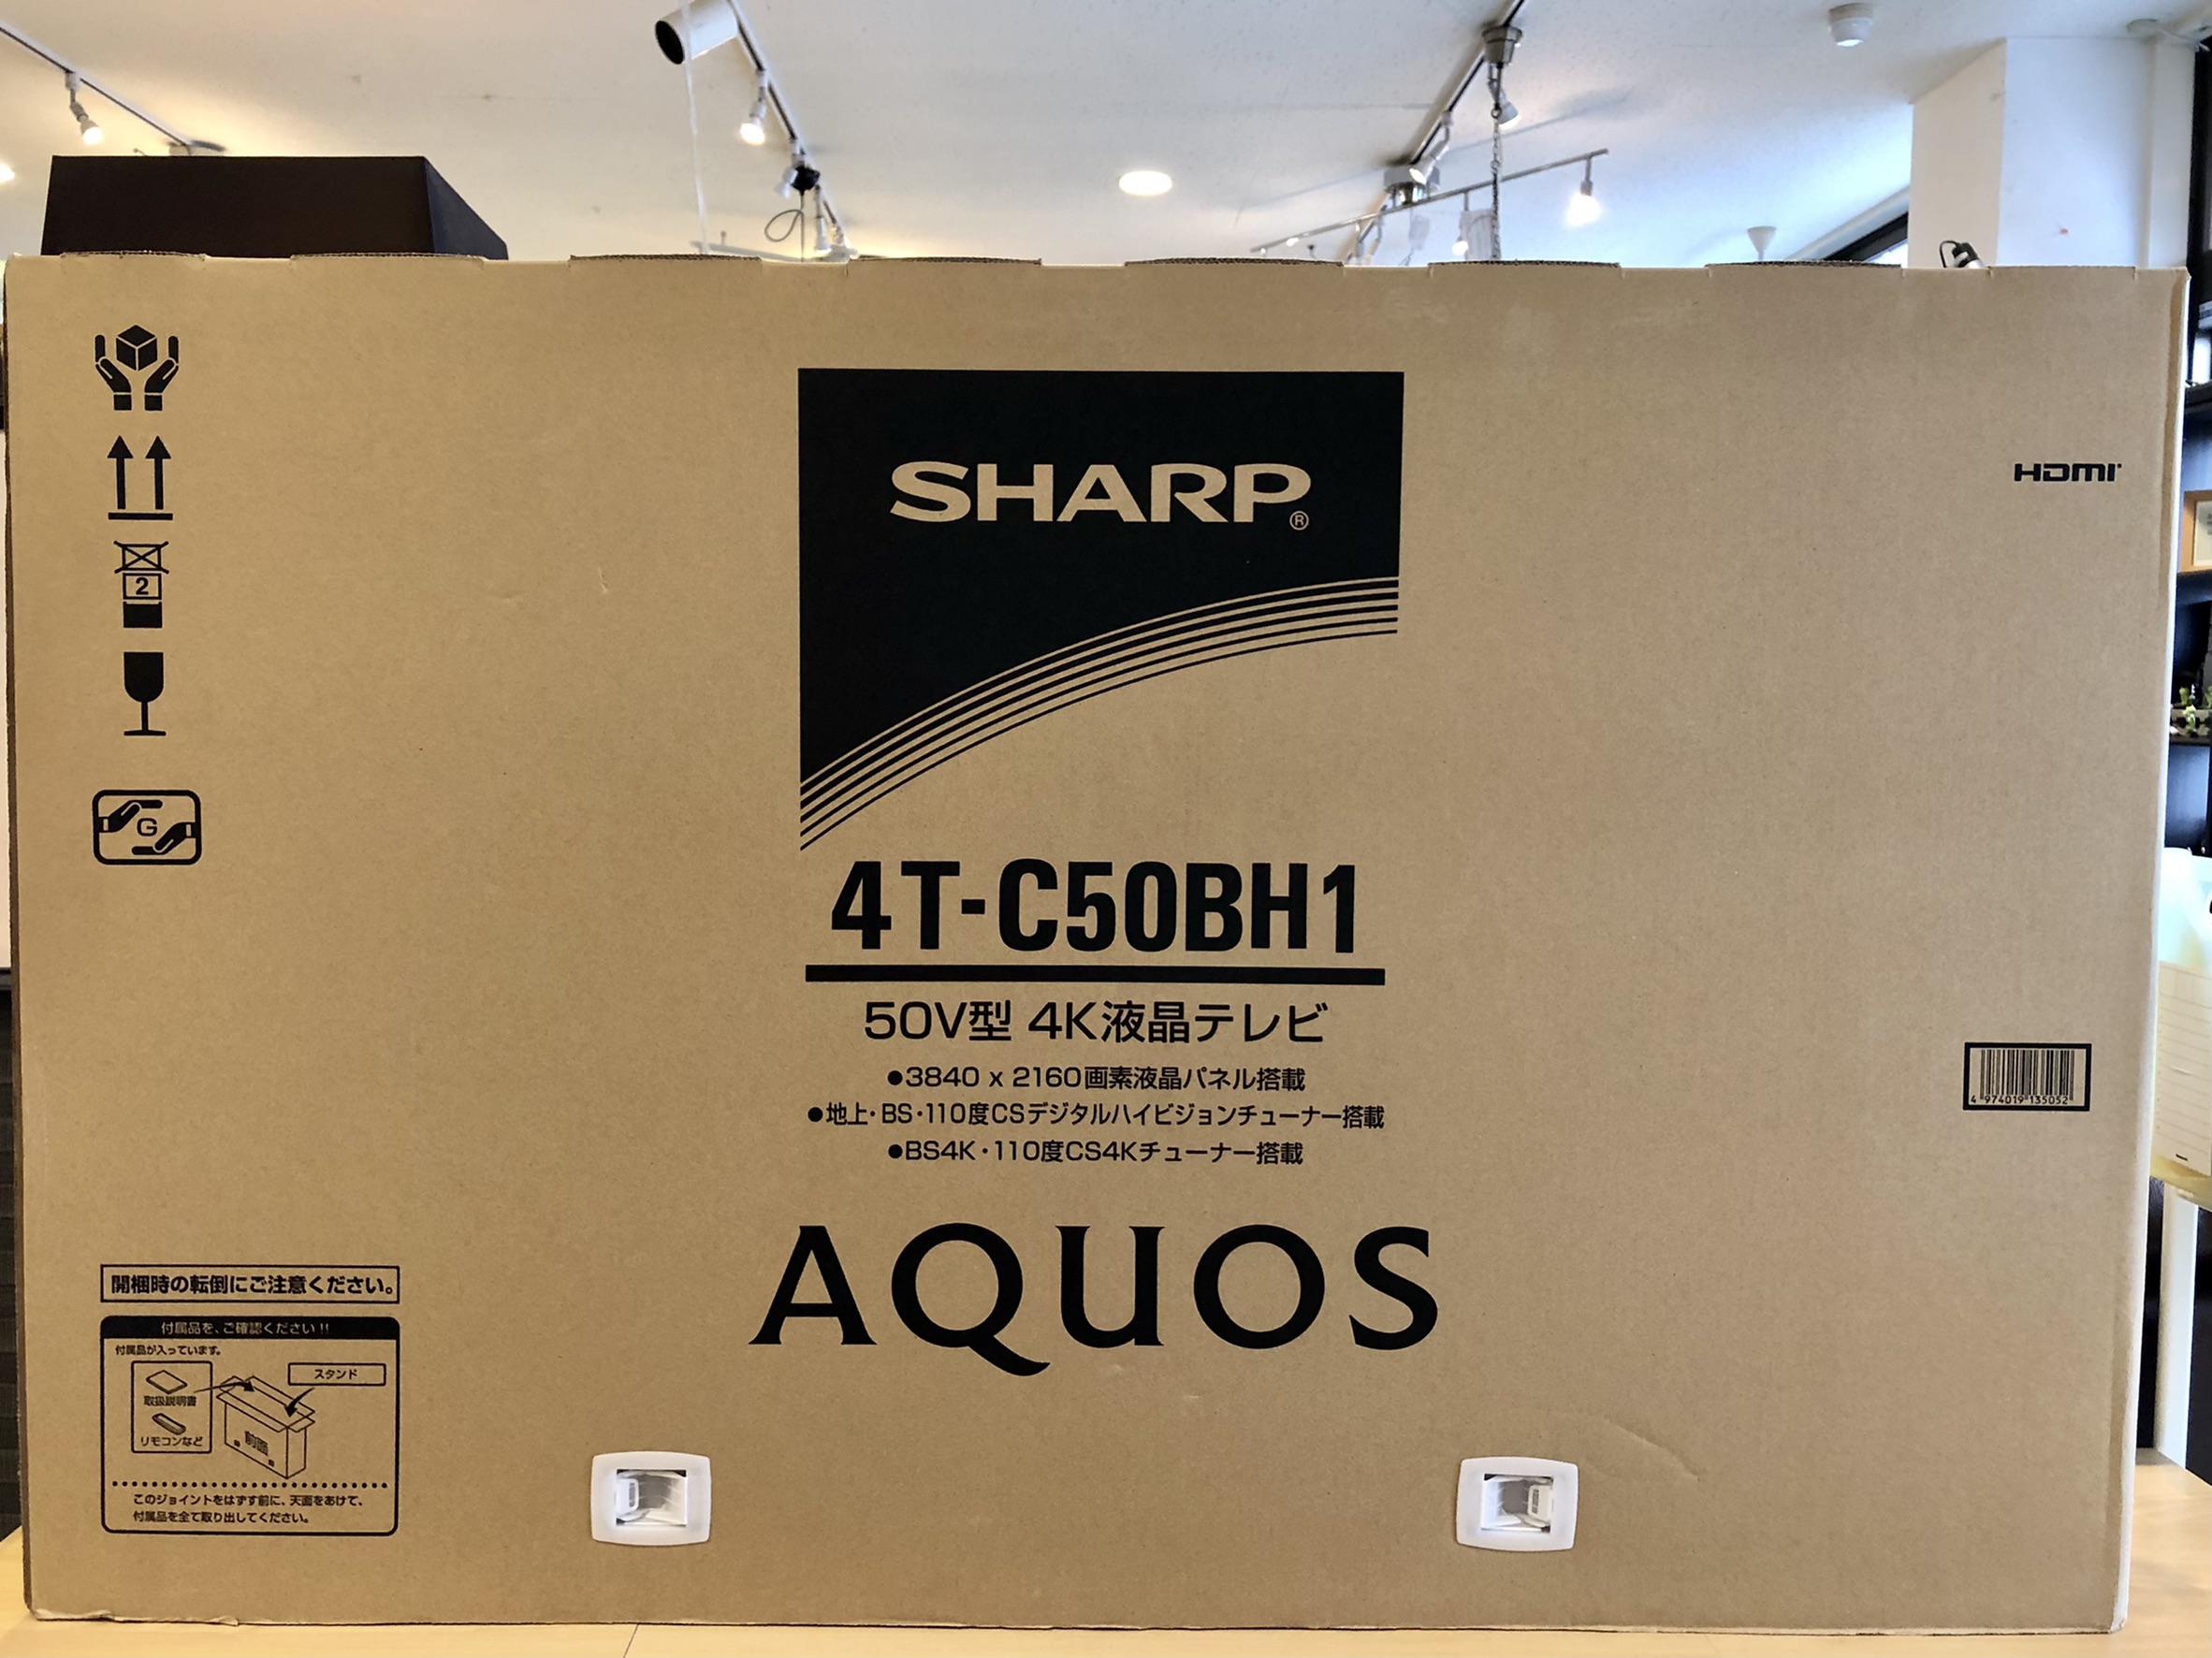 新品未使用品】SHARP 2019年製 AQUOS 50型 4K対応液晶テレビ 4T-C50BH1